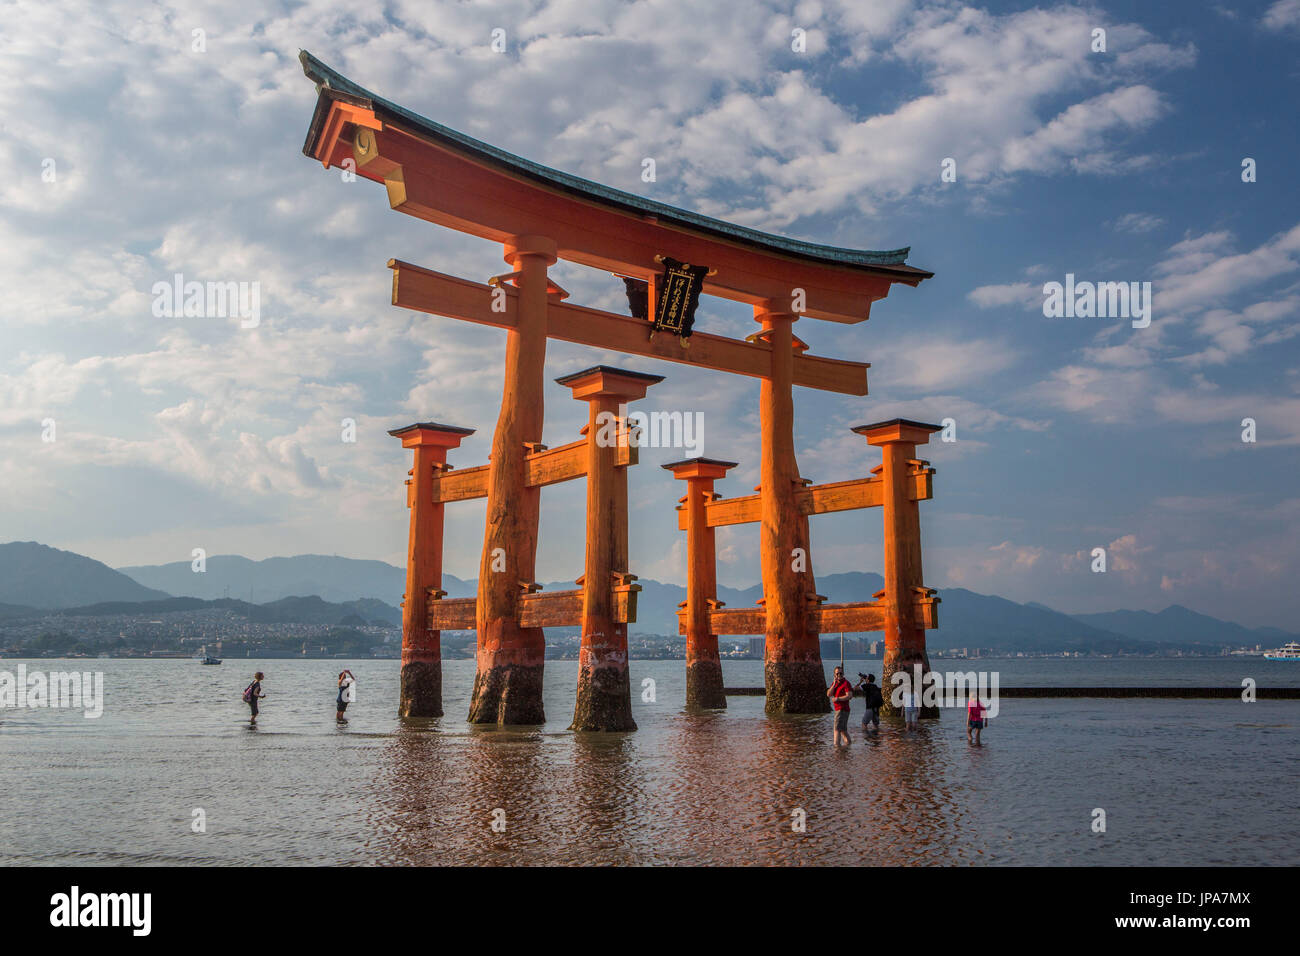 Le Japon, Hiroshima, l'île de Myajima Province, Utsukushima de culte, la porte Banque D'Images